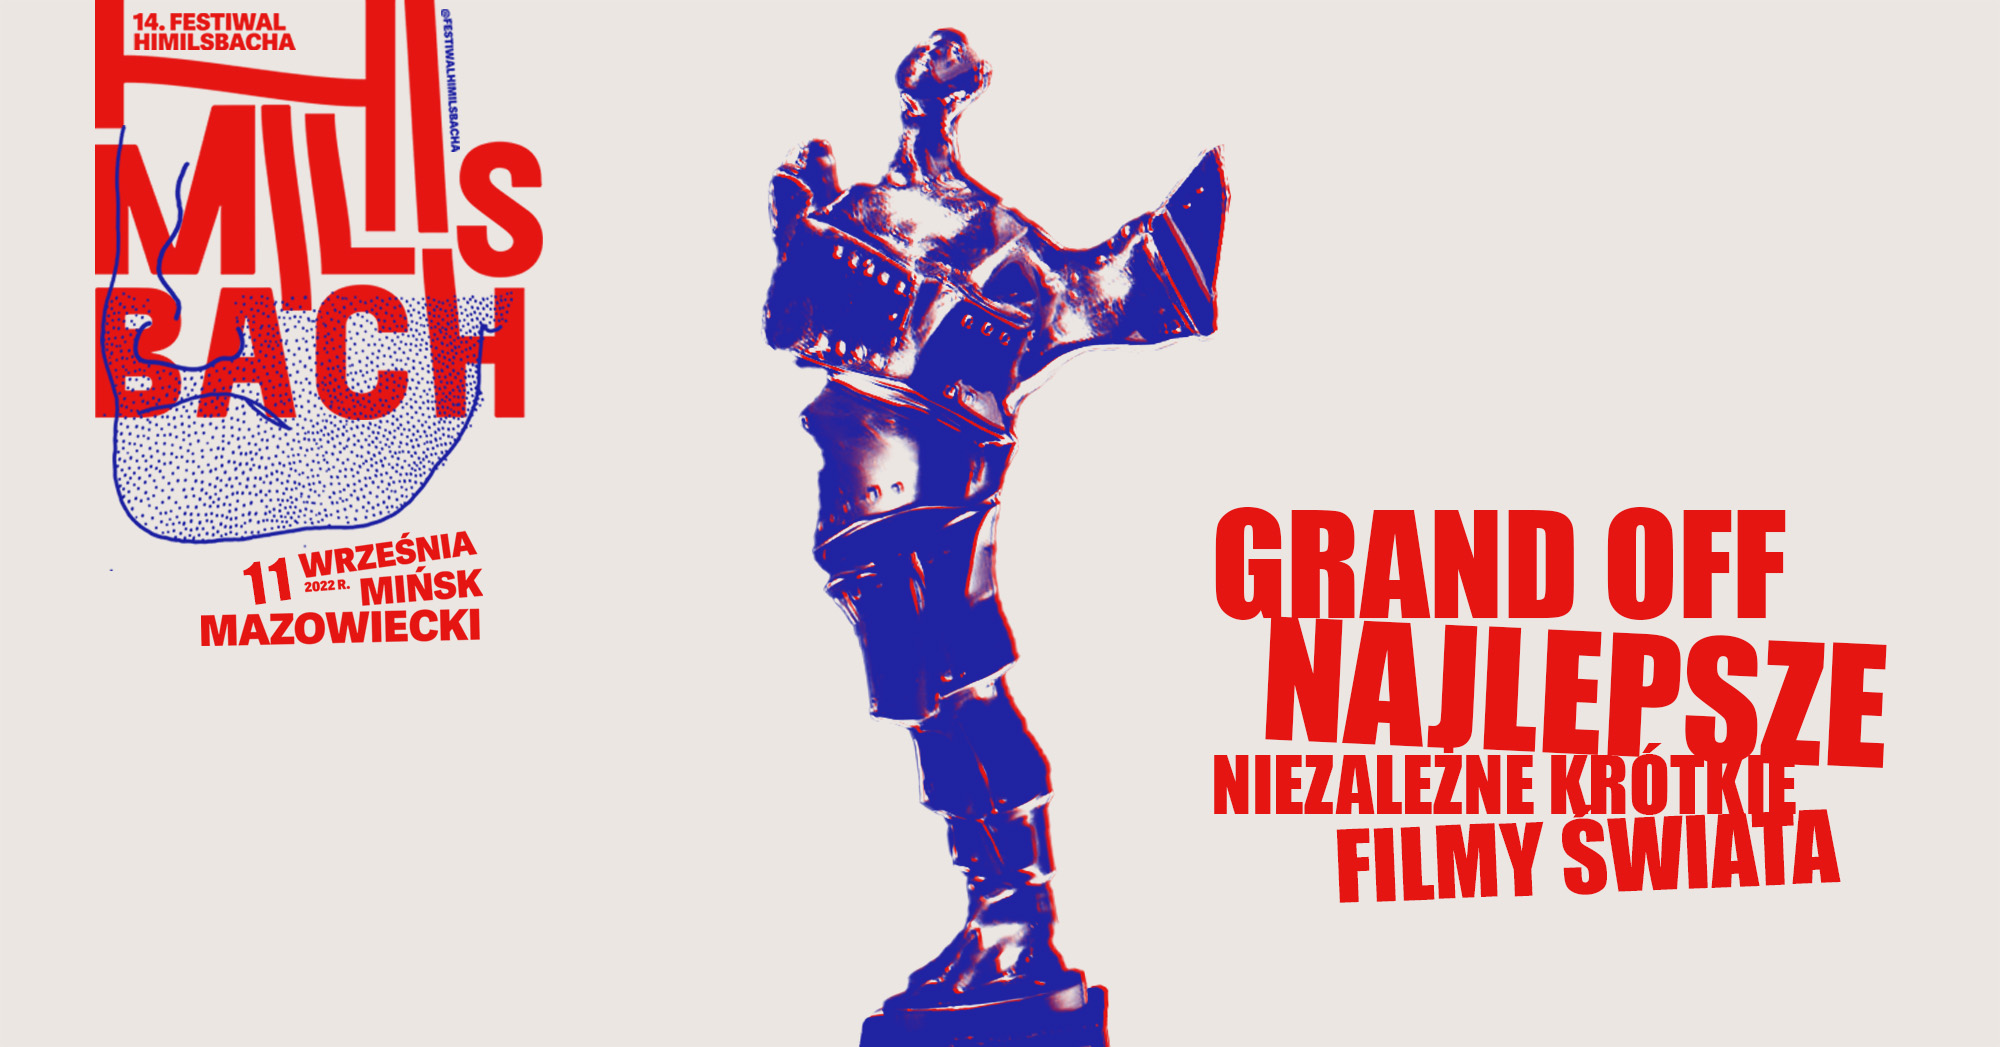 Grand OFF Najlepsze Niezależne Krótkie Filmy Świata | 14. Festiwal Himilsbacha